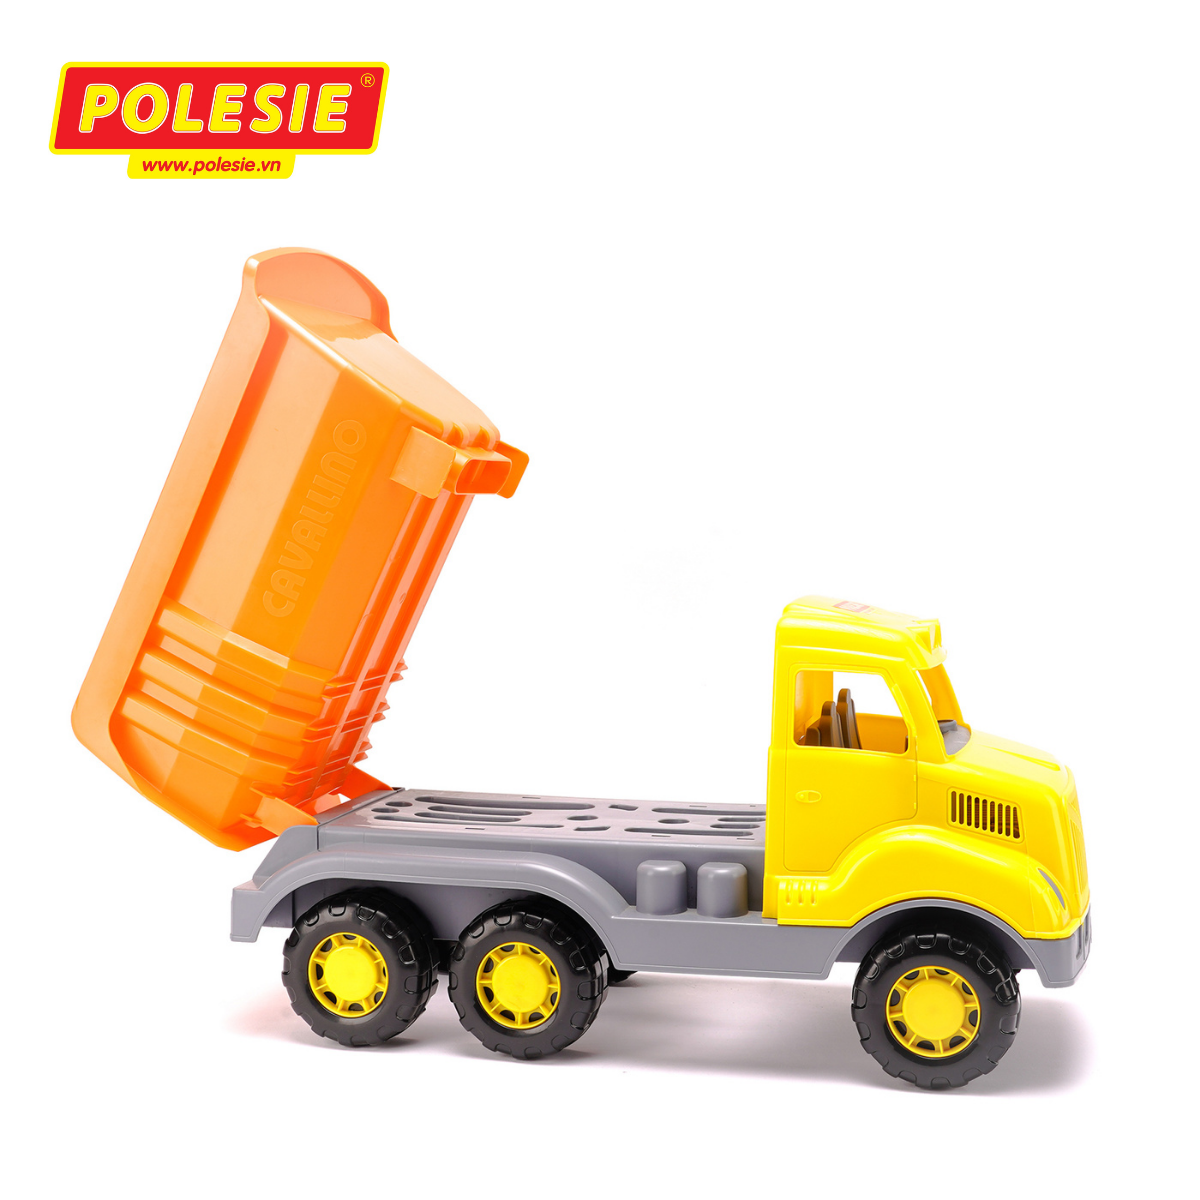 Xe tải chở hàng Polesie 37336 - Hàng chính hãng nhập khẩu châu âu